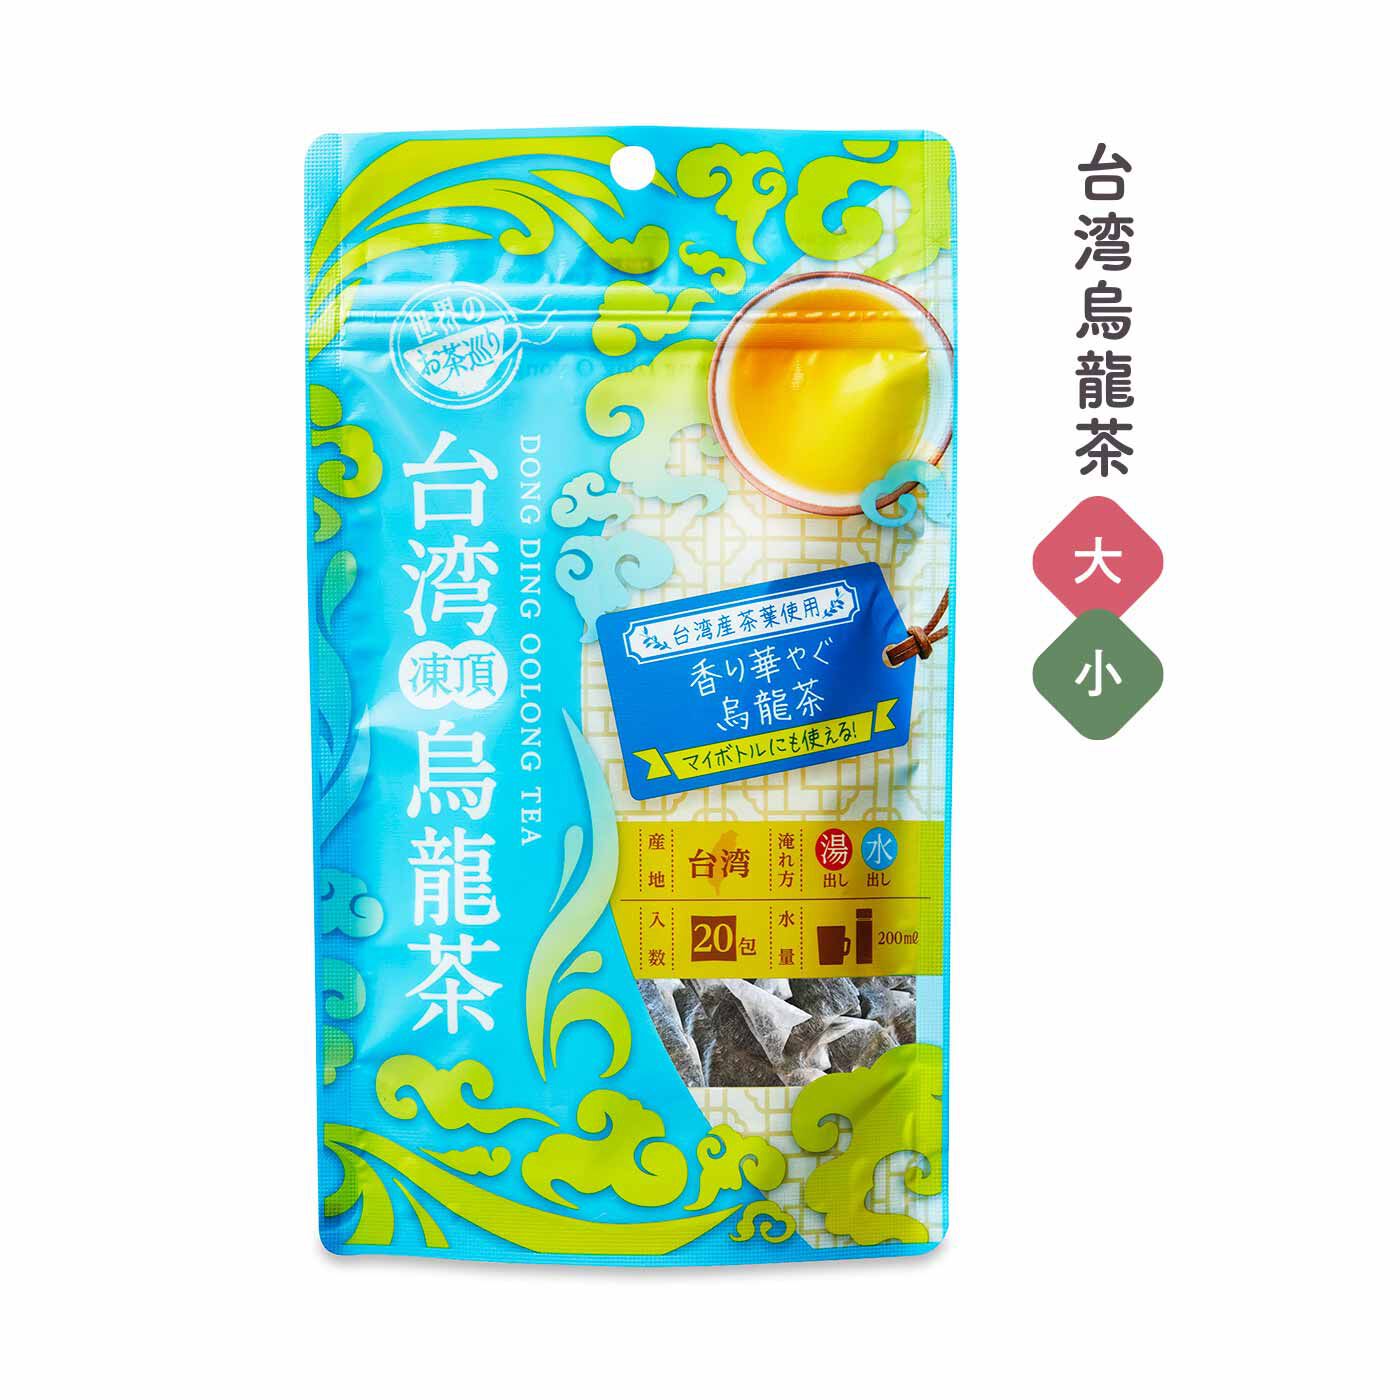 FELISSIMO PARTNERS|毎日、たっぷり楽しめるティーバッグ 世界のお茶めぐりの会（12回予約）|人気の台湾凍頂烏龍茶。薄い金色で、花の香りと優雅な風味が特長です。